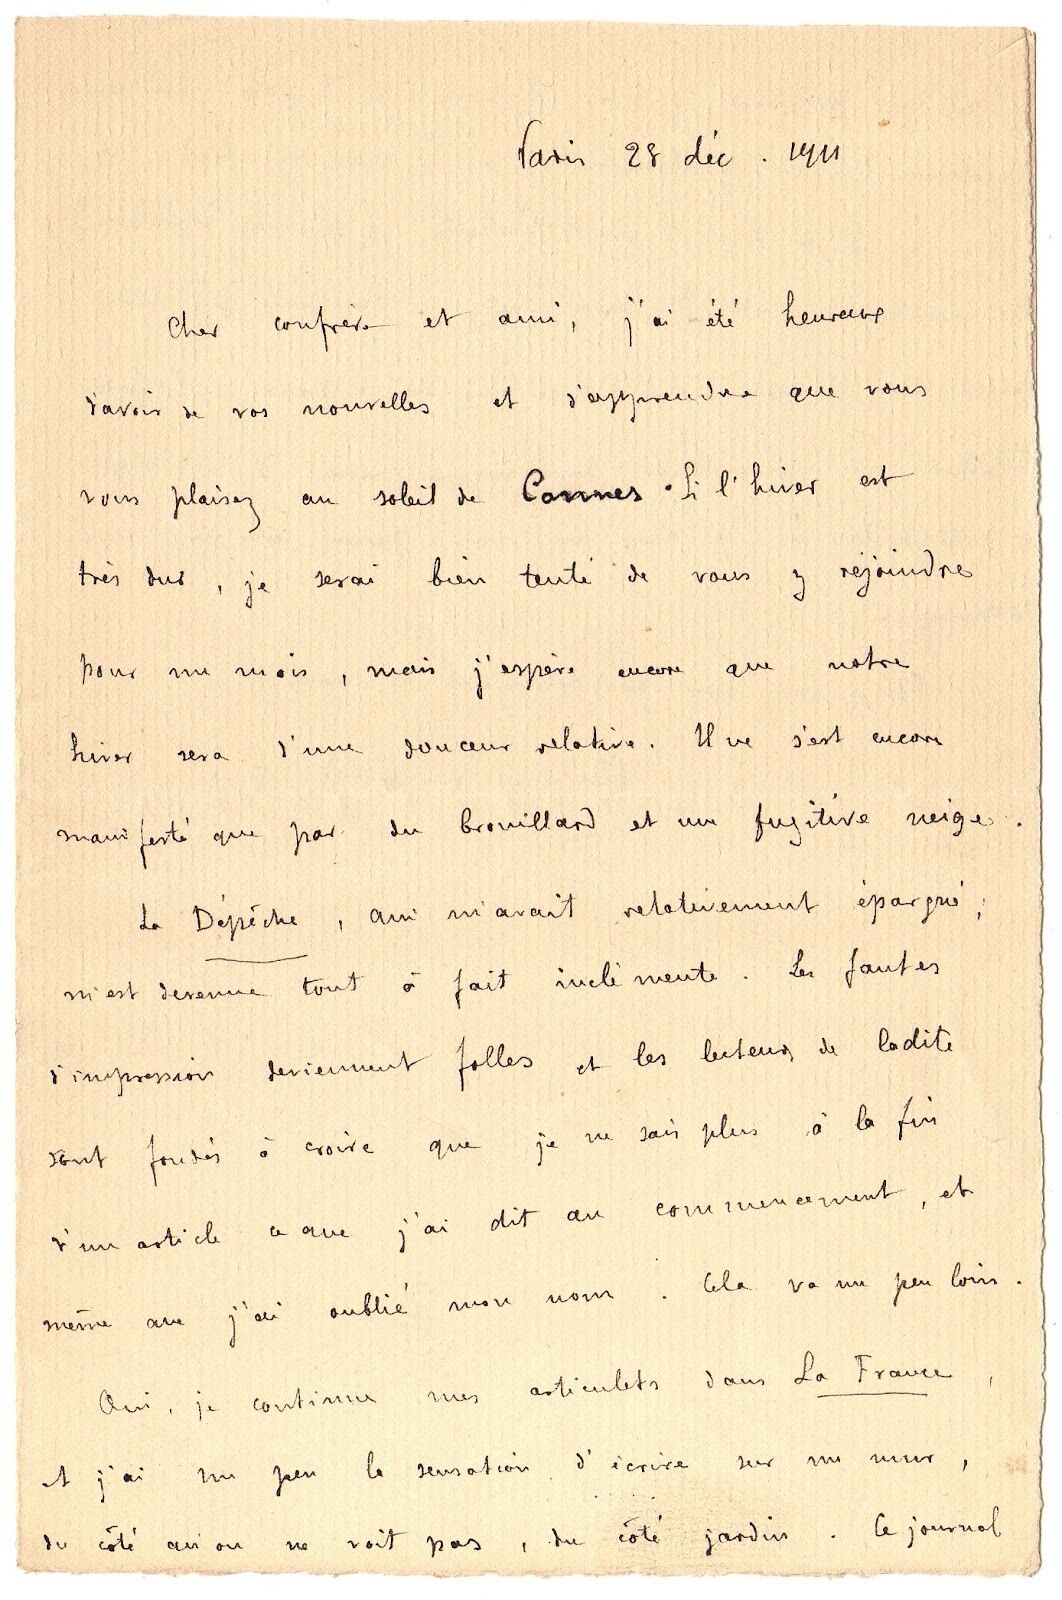 REMY de Gourmont to Octave Uzanne - autograph - December 28, 1911